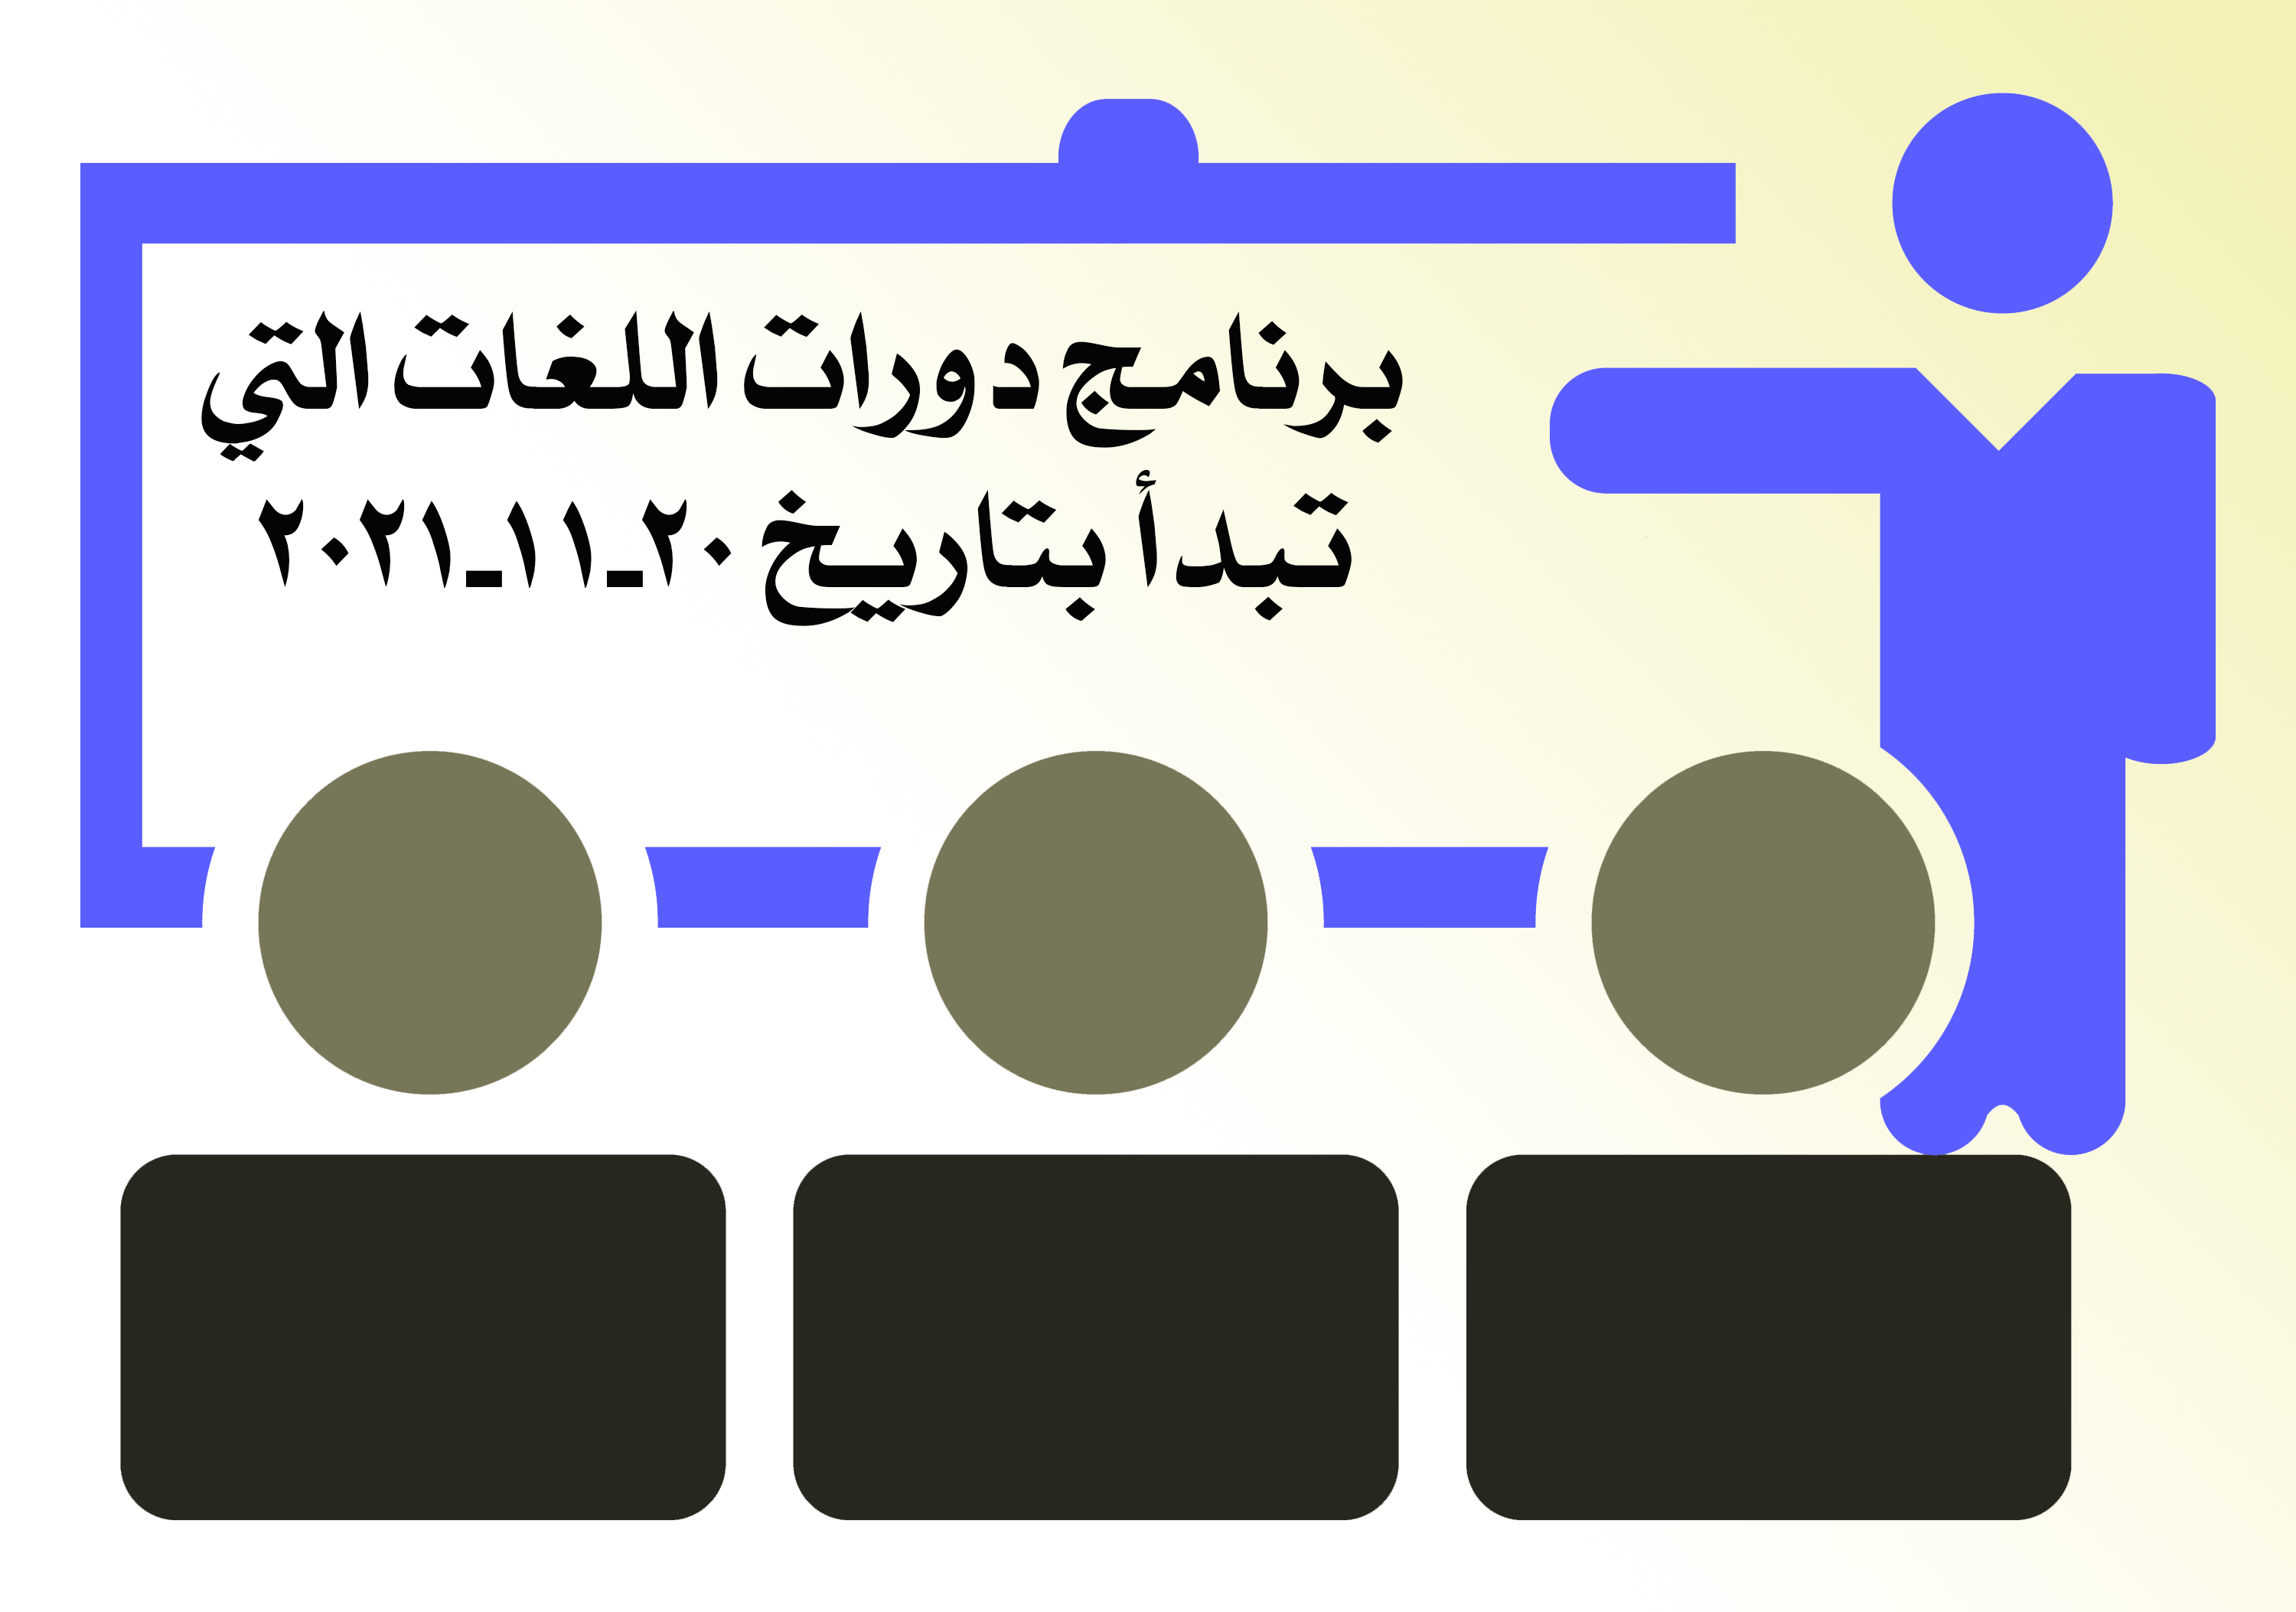 برنامج دورات اللغات التي تبدأ بتاريخ 20-11-2021